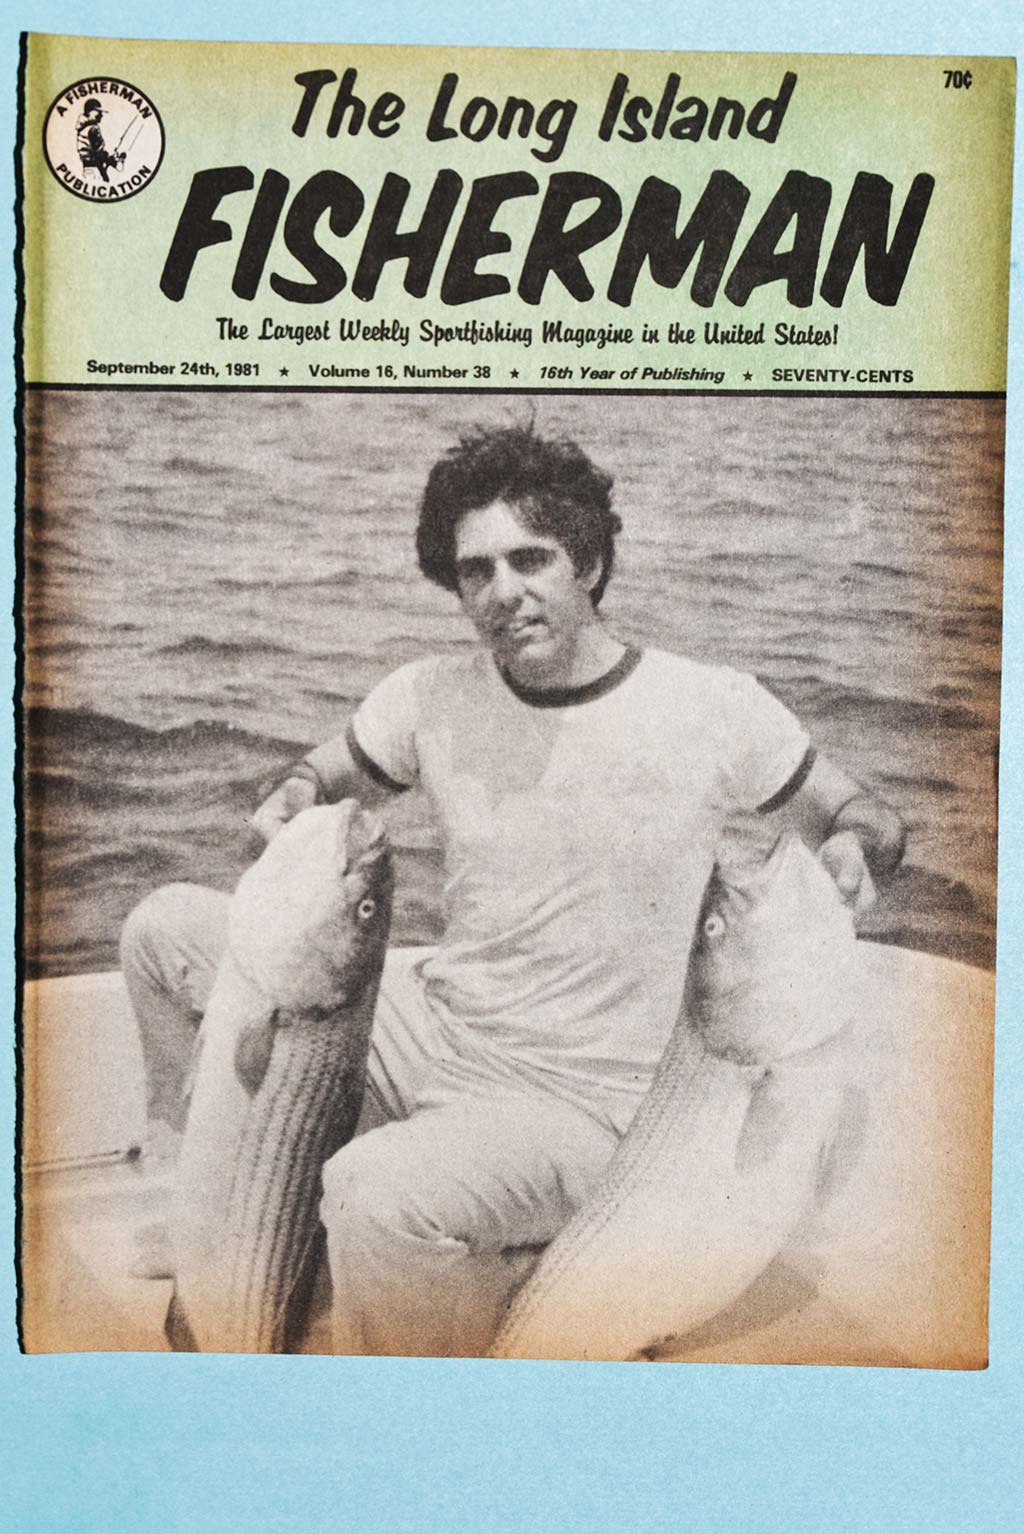 Fred Golofaro: A Retrospective - The Fisherman